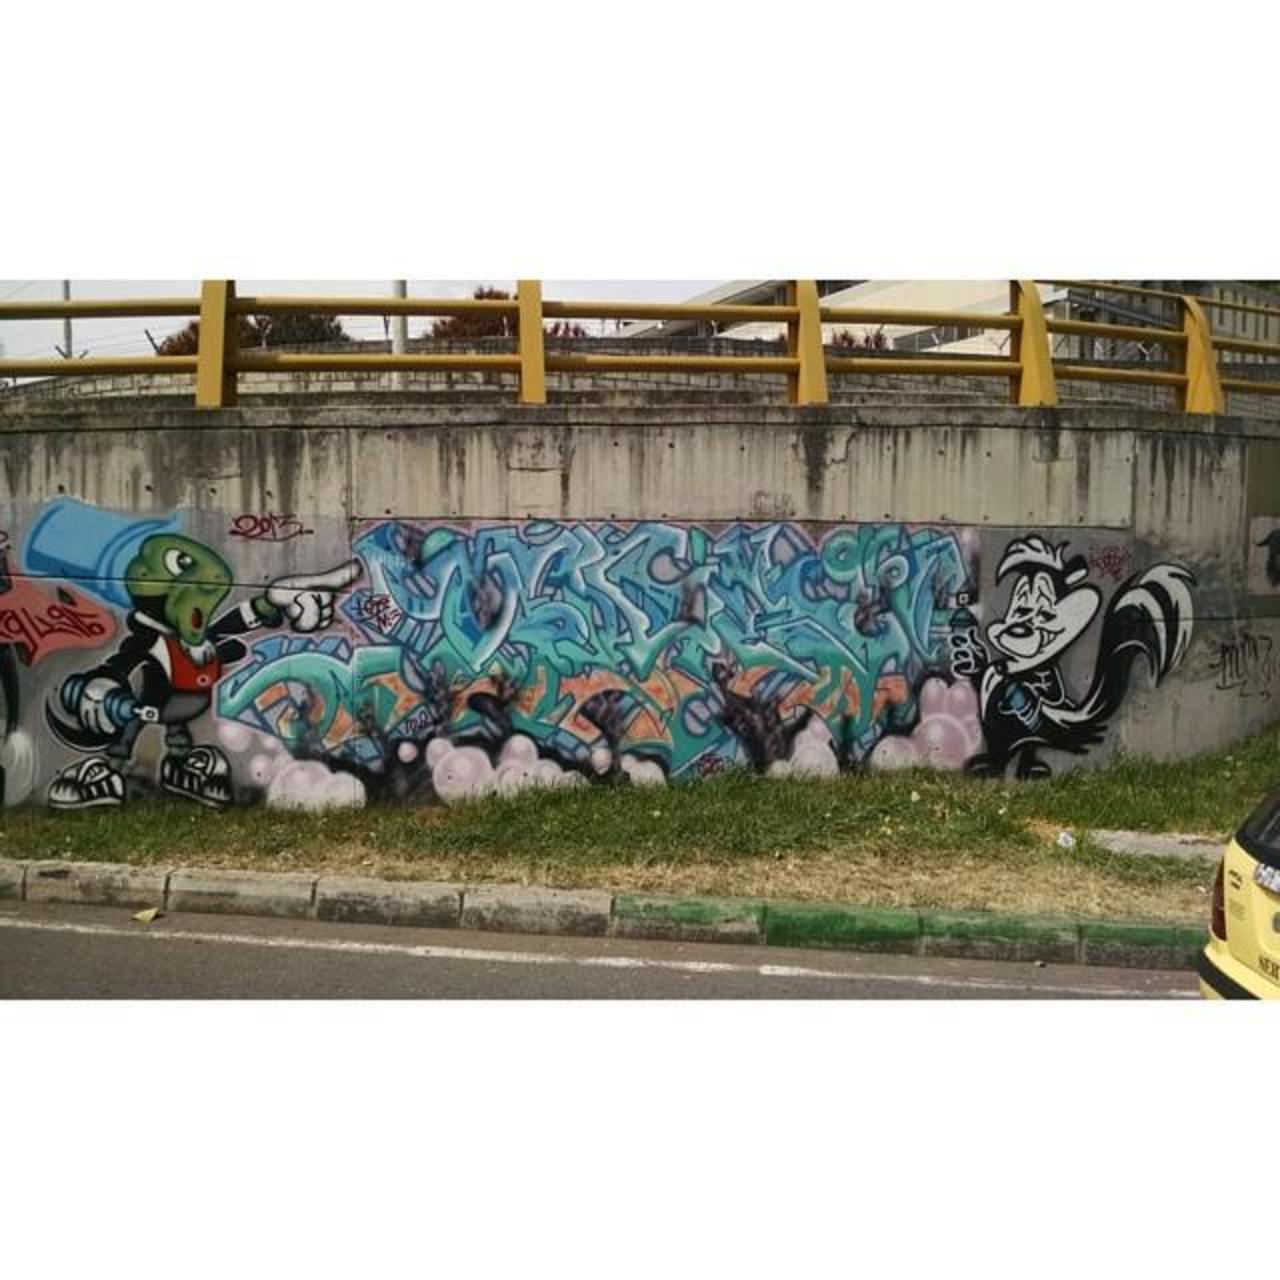 In barrio San Diego, Medellin #Medellin #streetart #art #graffiti #bside #pepelepew #pinocchio #jiminycricket http://t.co/DCJ4SyY380